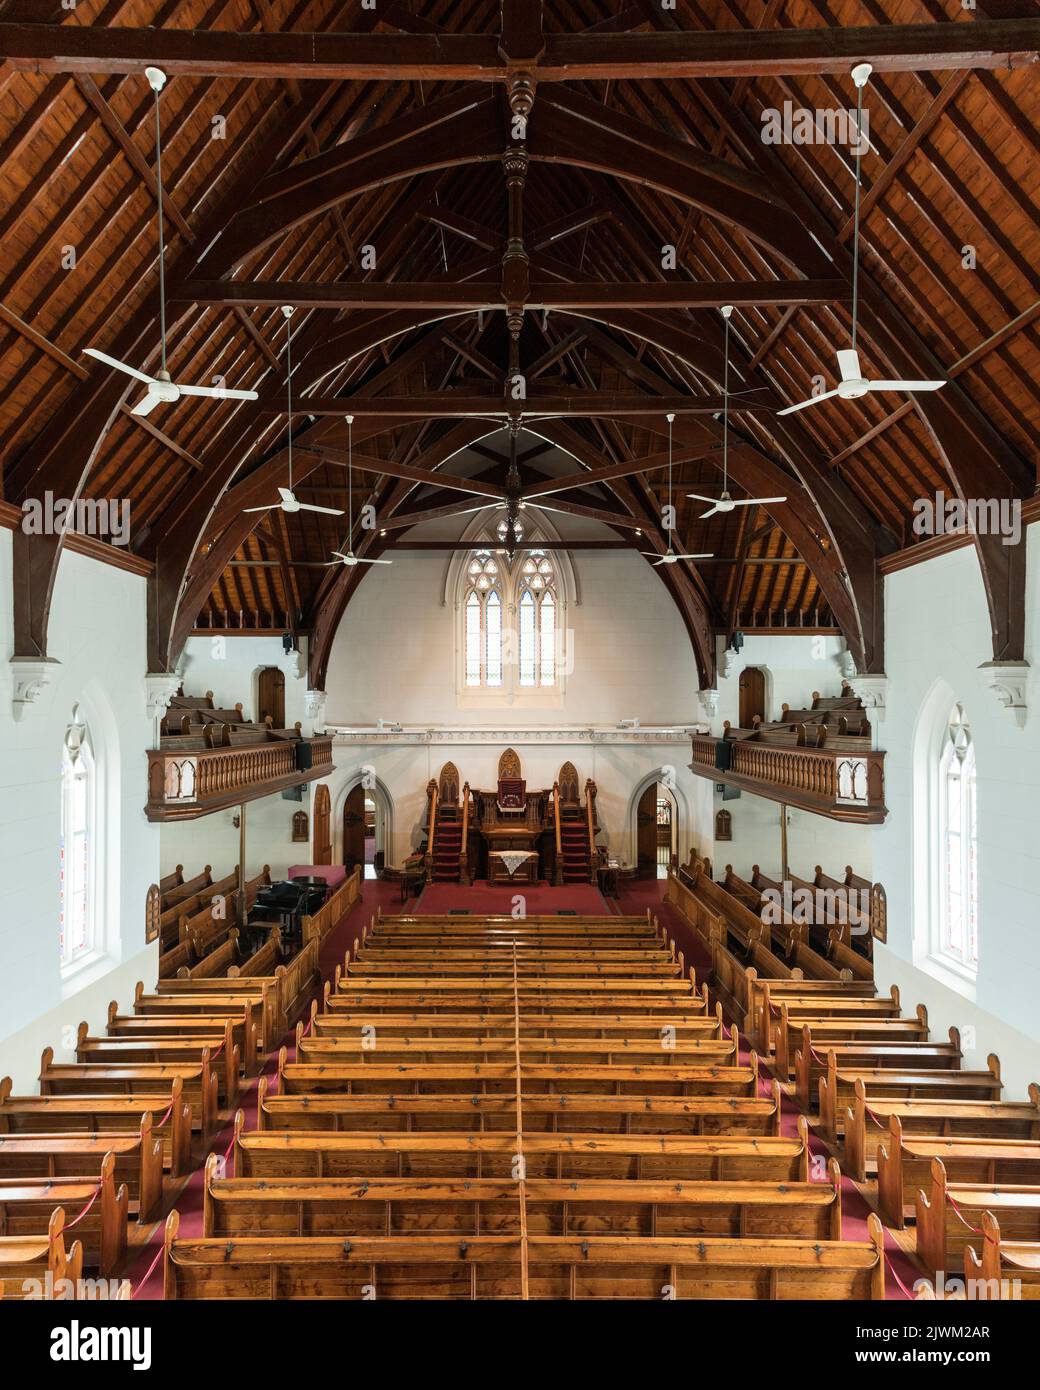 Intérieur de l'église réformée néerlandaise, Graaff-Reinet, Cap-est, Afrique du Sud Banque D'Images